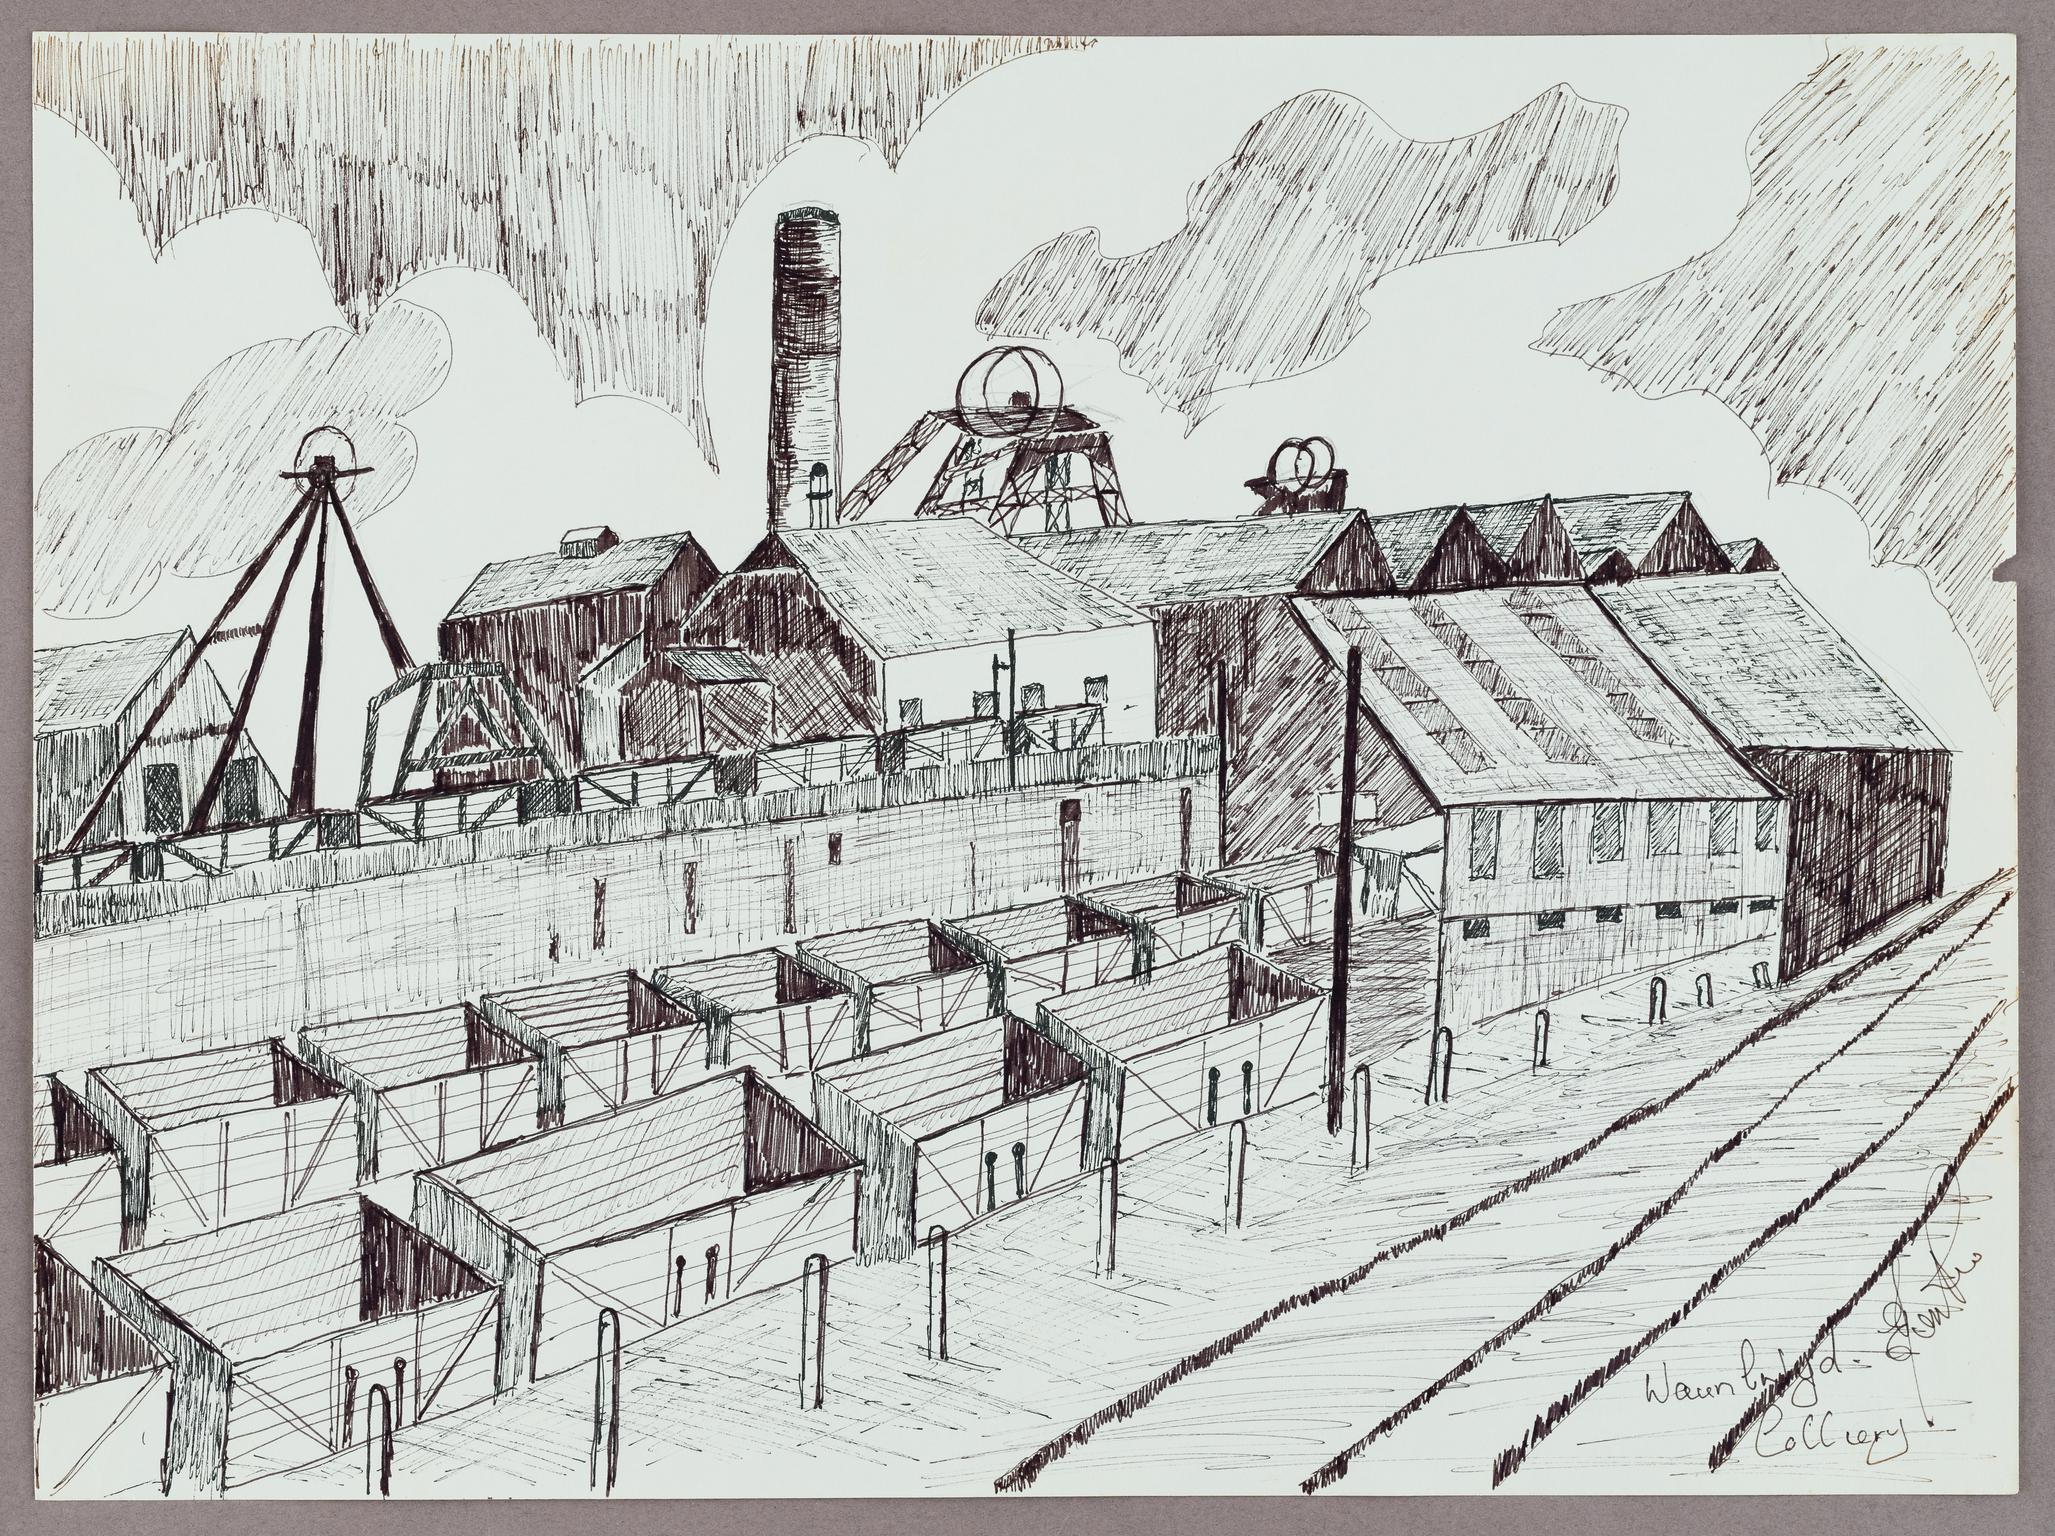 Waunlwyd Colliery (drawing)